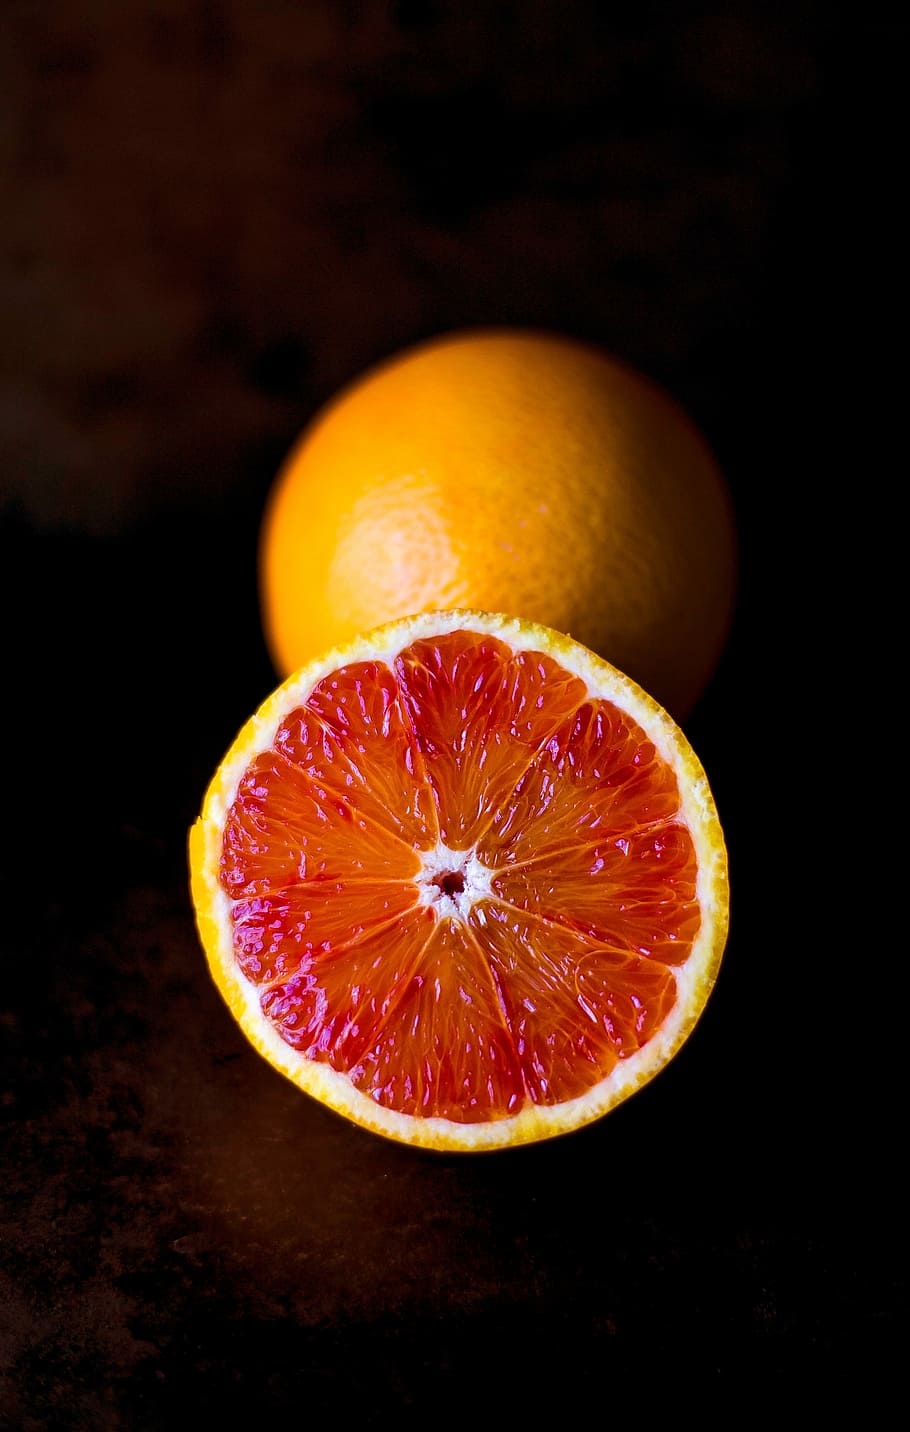 ブラッドオレンジ, 柑橘類, 果物, ミニマル, オレンジ, 赤, 単純化, 柑橘系の果物, 食品, 鮮度